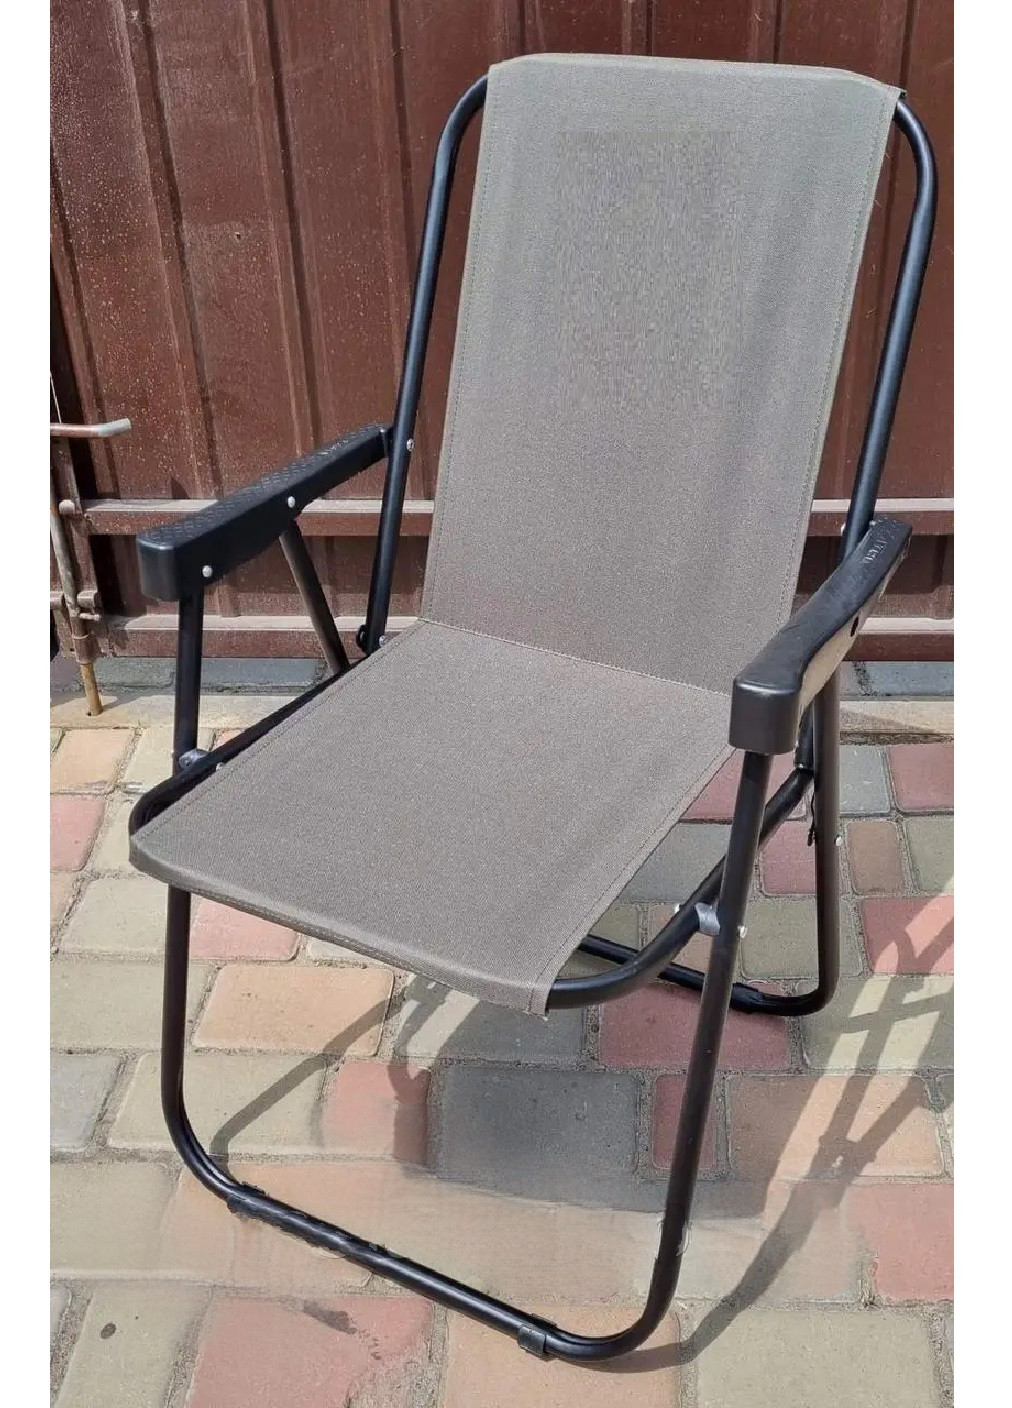 Раскладное кресло с подлокотниками стул для отдыха дачи рыбалки пикника кемпинга 49х50х79 см (475285-Prob) Серое Unbranded (265391192)